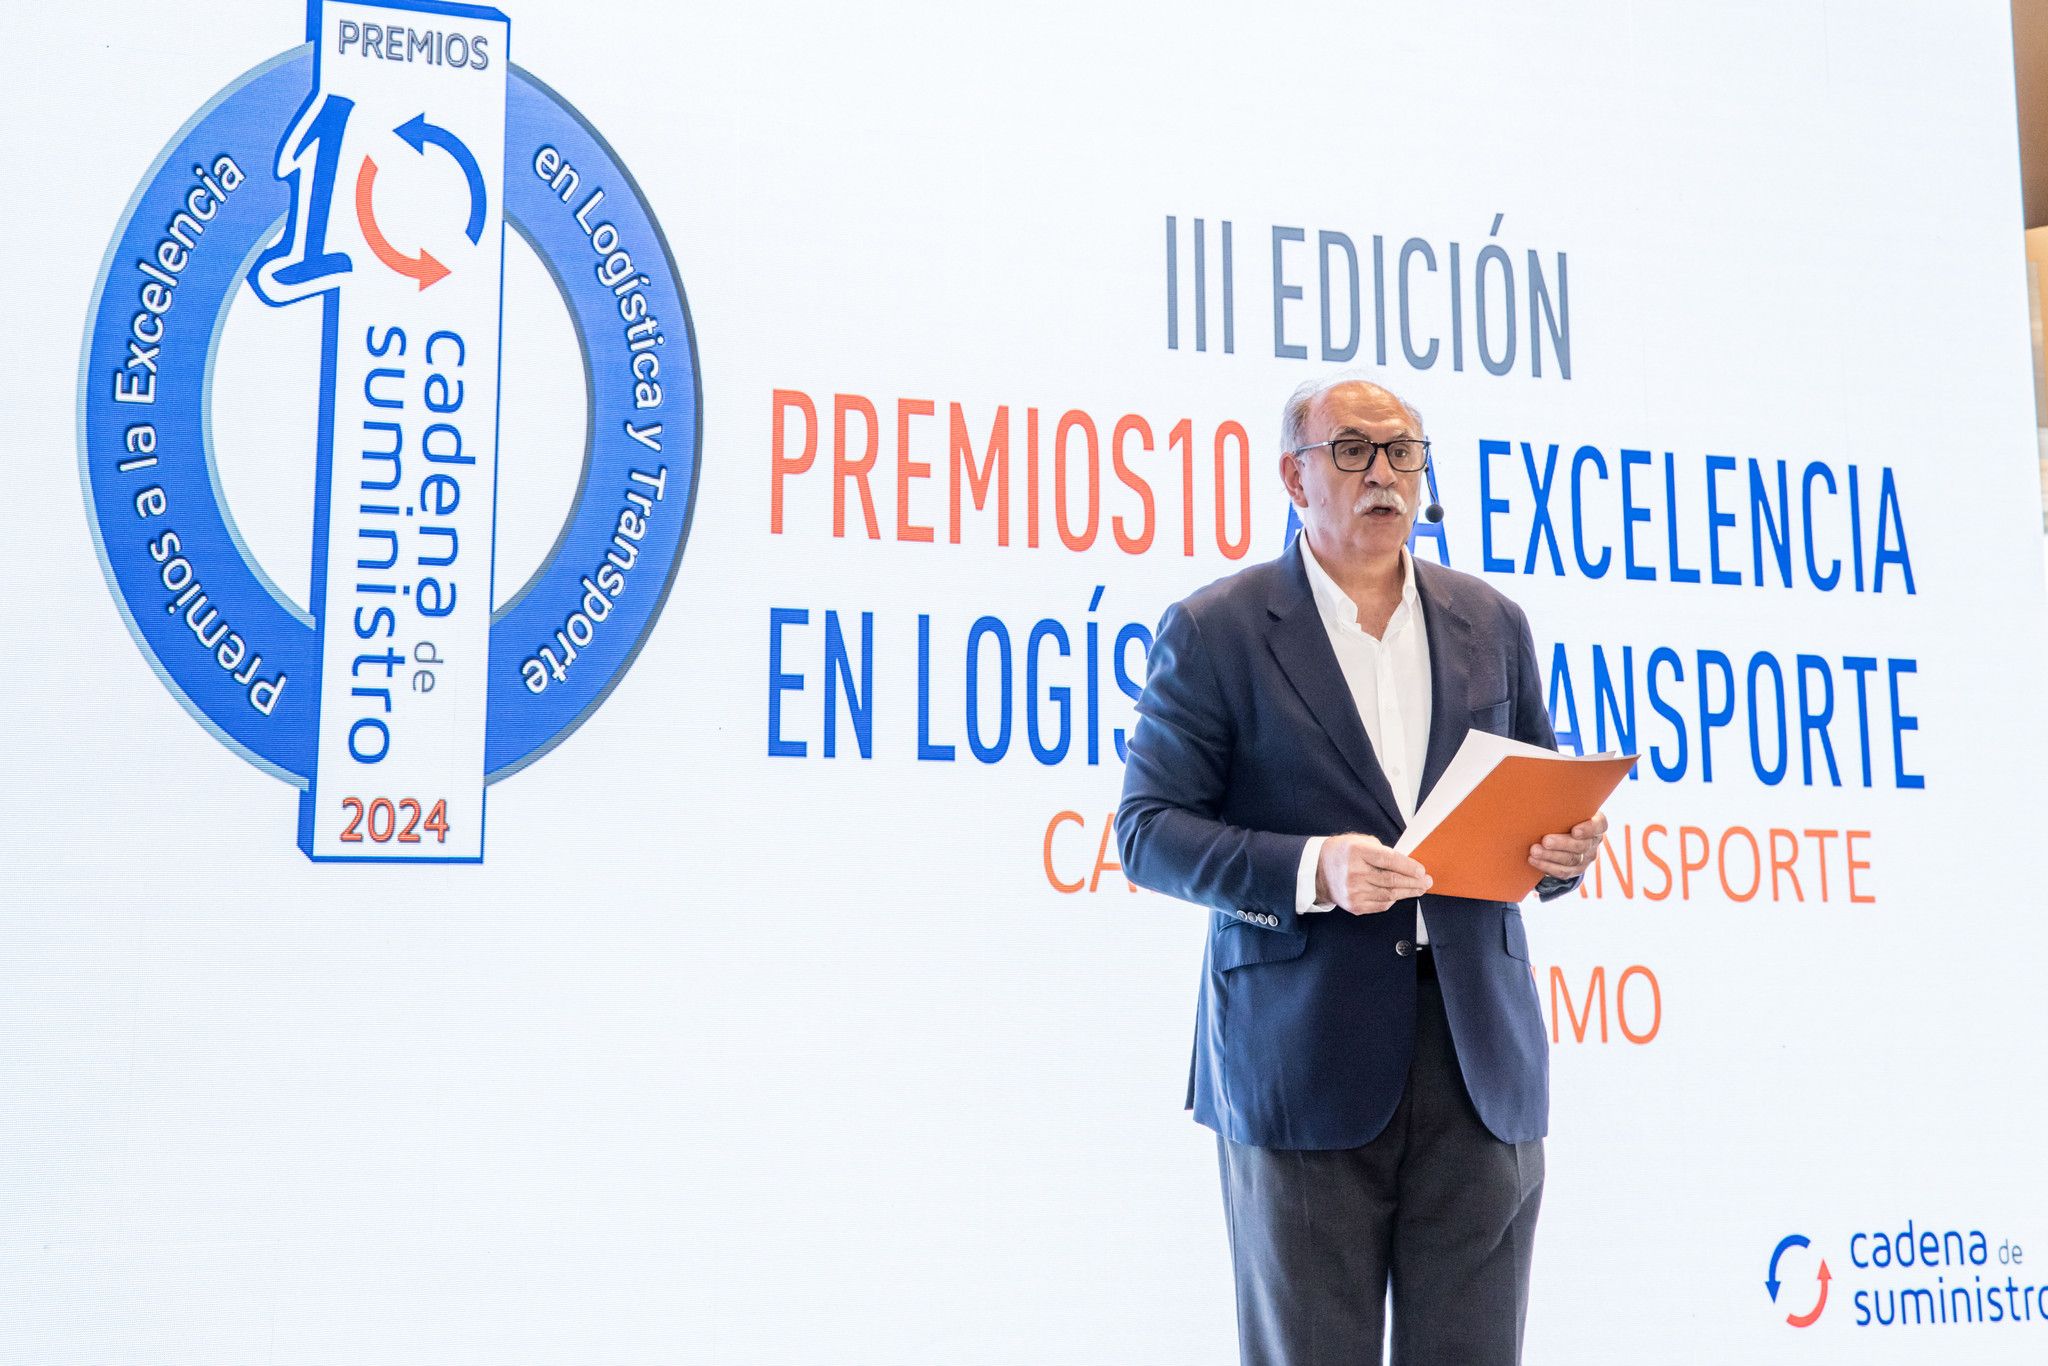 Ricardo Ochoa de Aspuru, editor de Cadena de Suministro, impulsa el reconocimiento de los profesionales que forman parte de este sector.